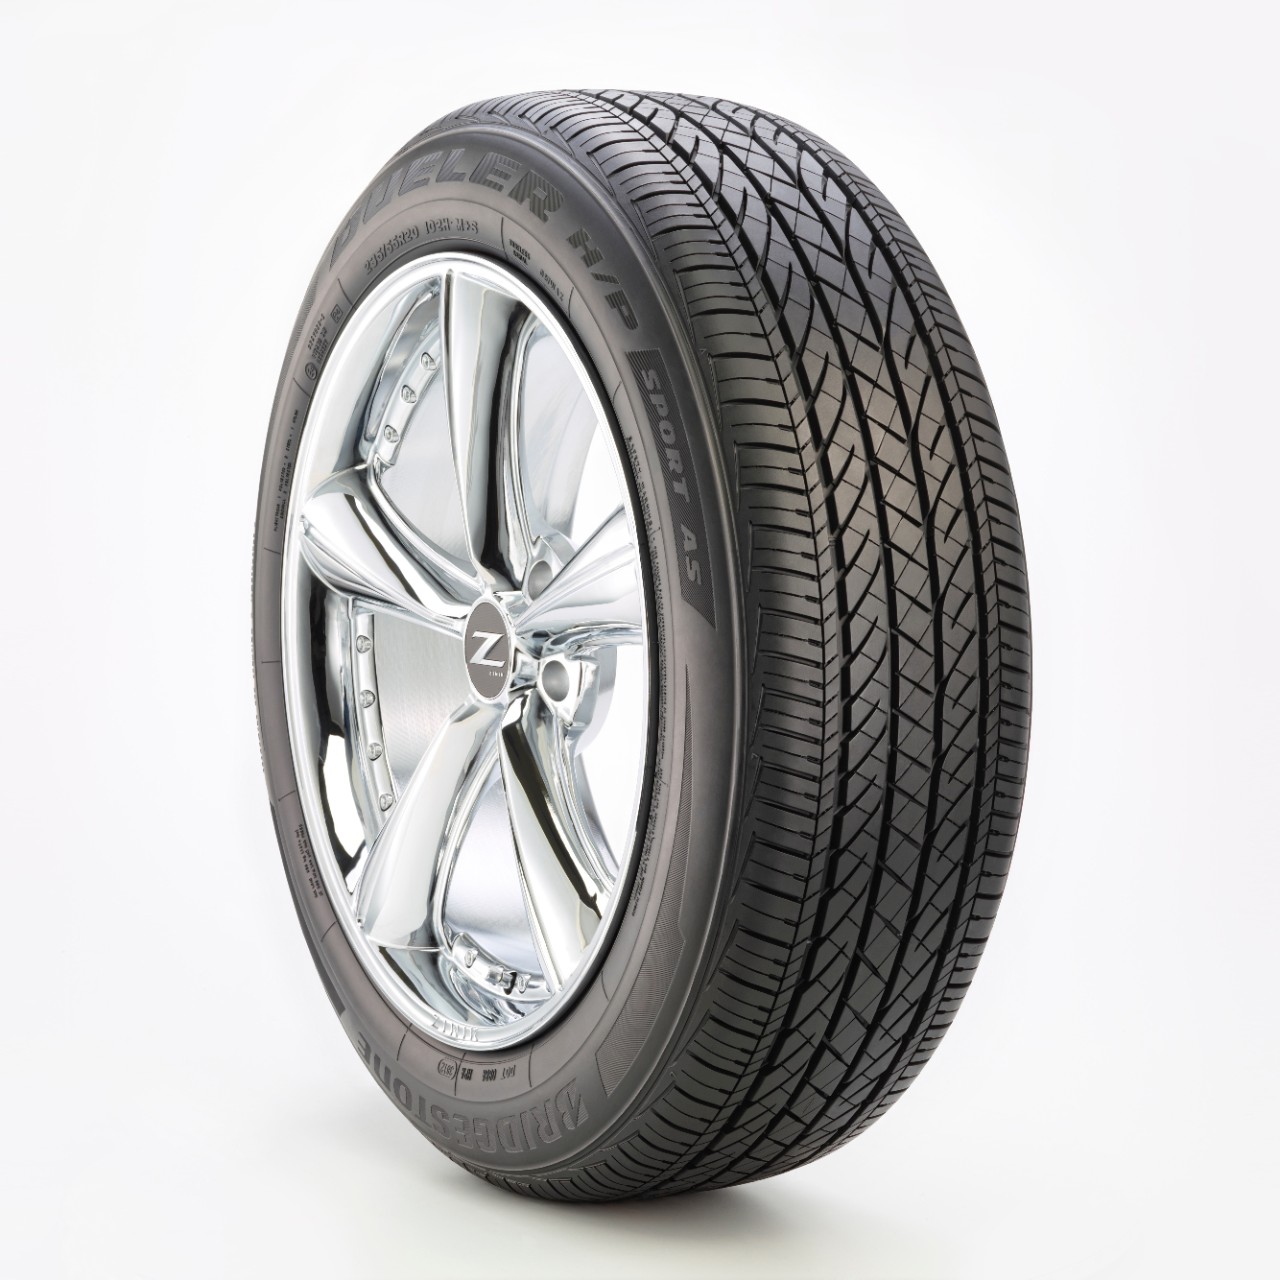 Gomme Nuove Bridgestone 235/60 R18 103V DUELLERSPAS AR Runflat pneumatici nuovi Estivo